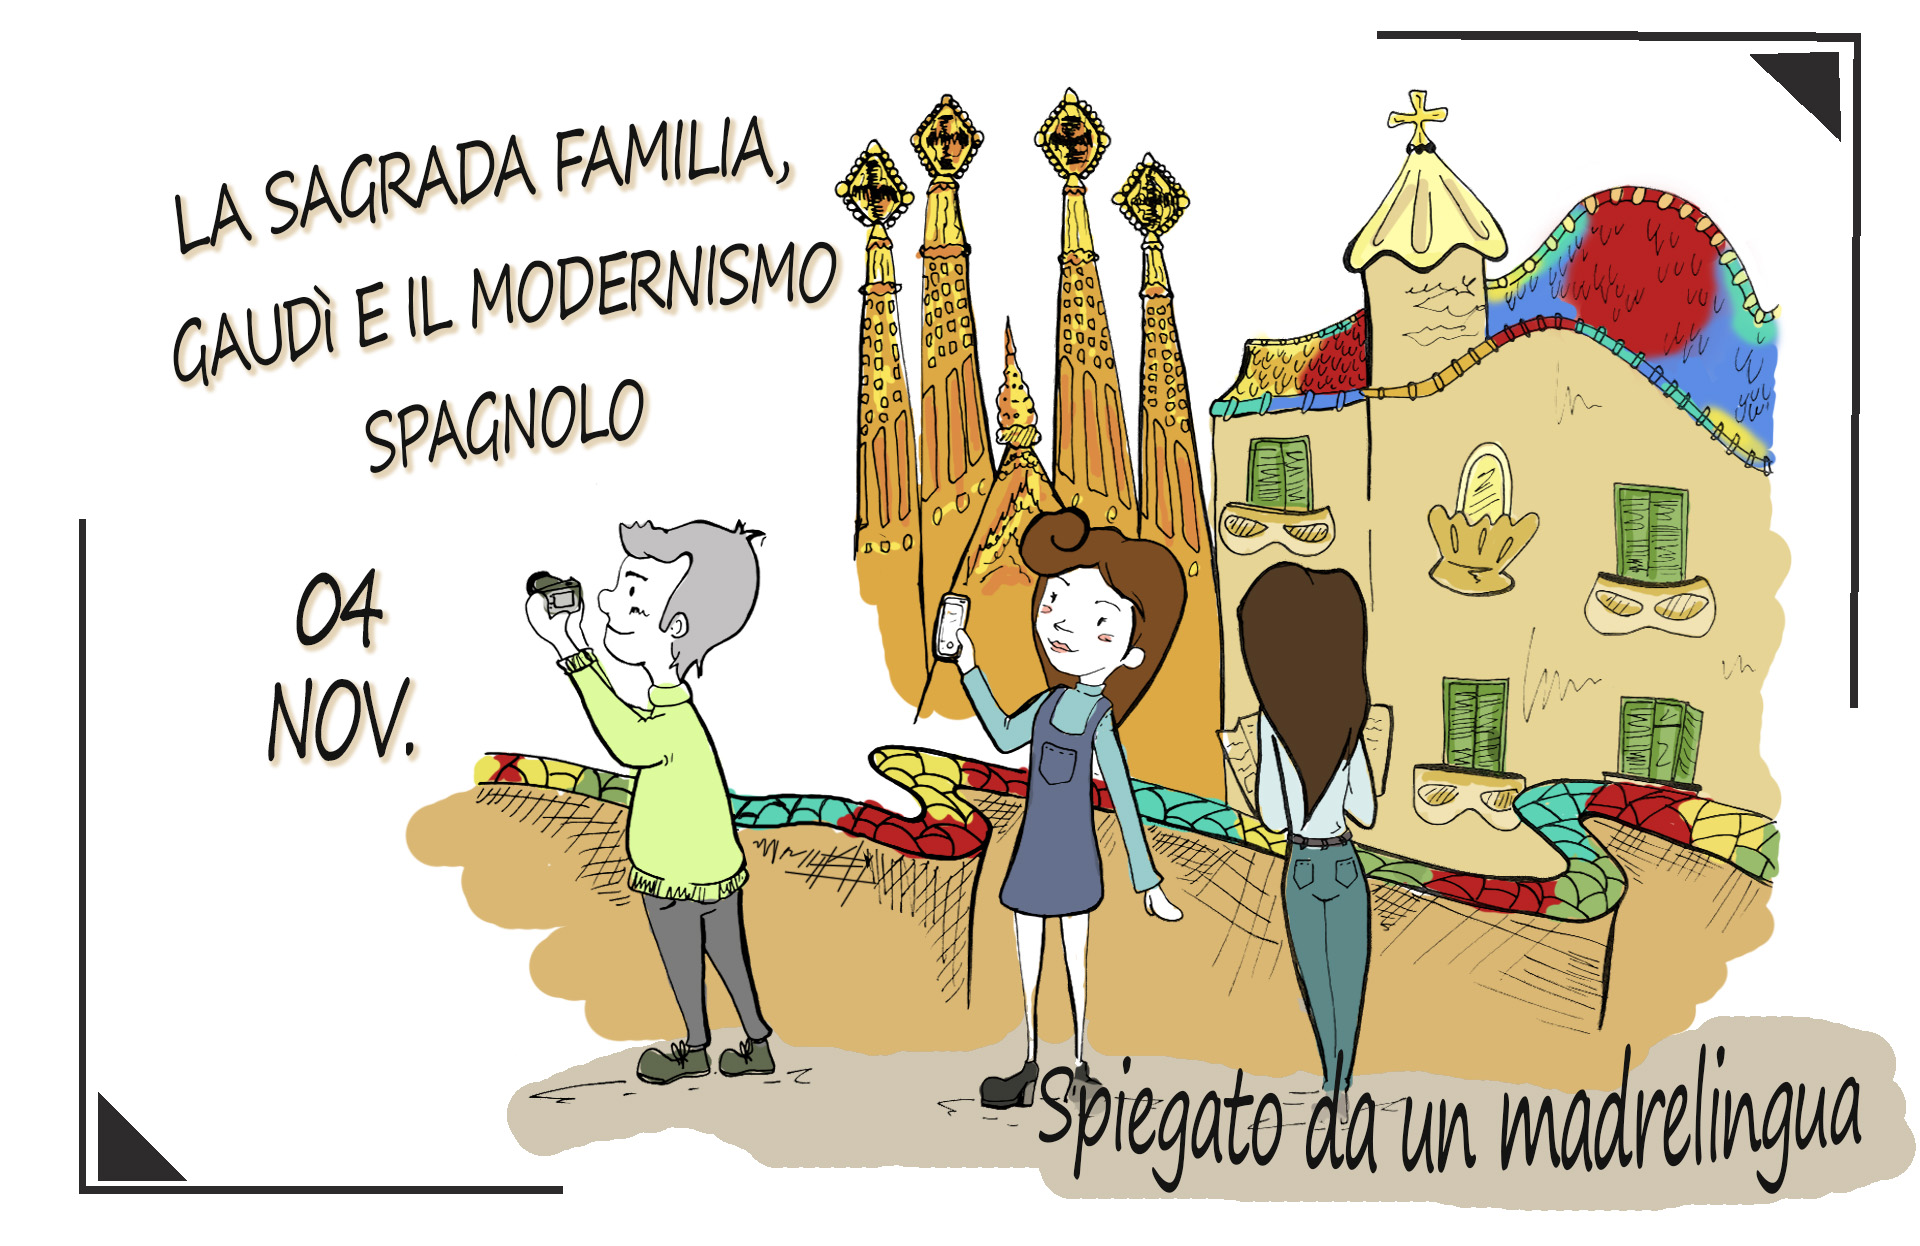 Il modernismo spagnolo e le 7 opere di Antoni Gaudì